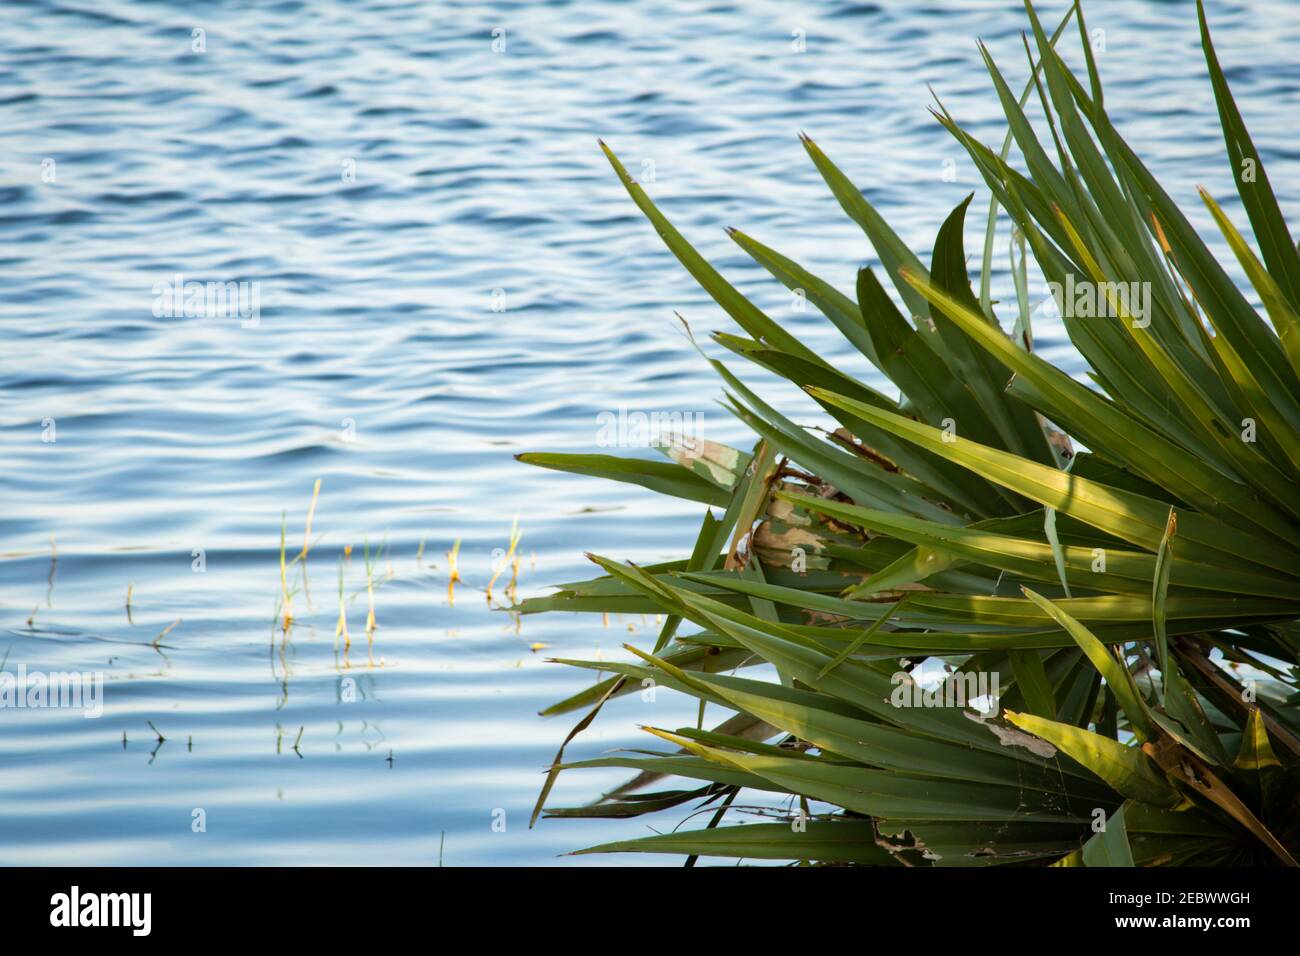 Vue sur les palmiers palmyra à moitié submergés par l'eau de la rivière Palar, Tamil Nadu, Inde. Mise au point sur les feuilles de palmyra Banque D'Images